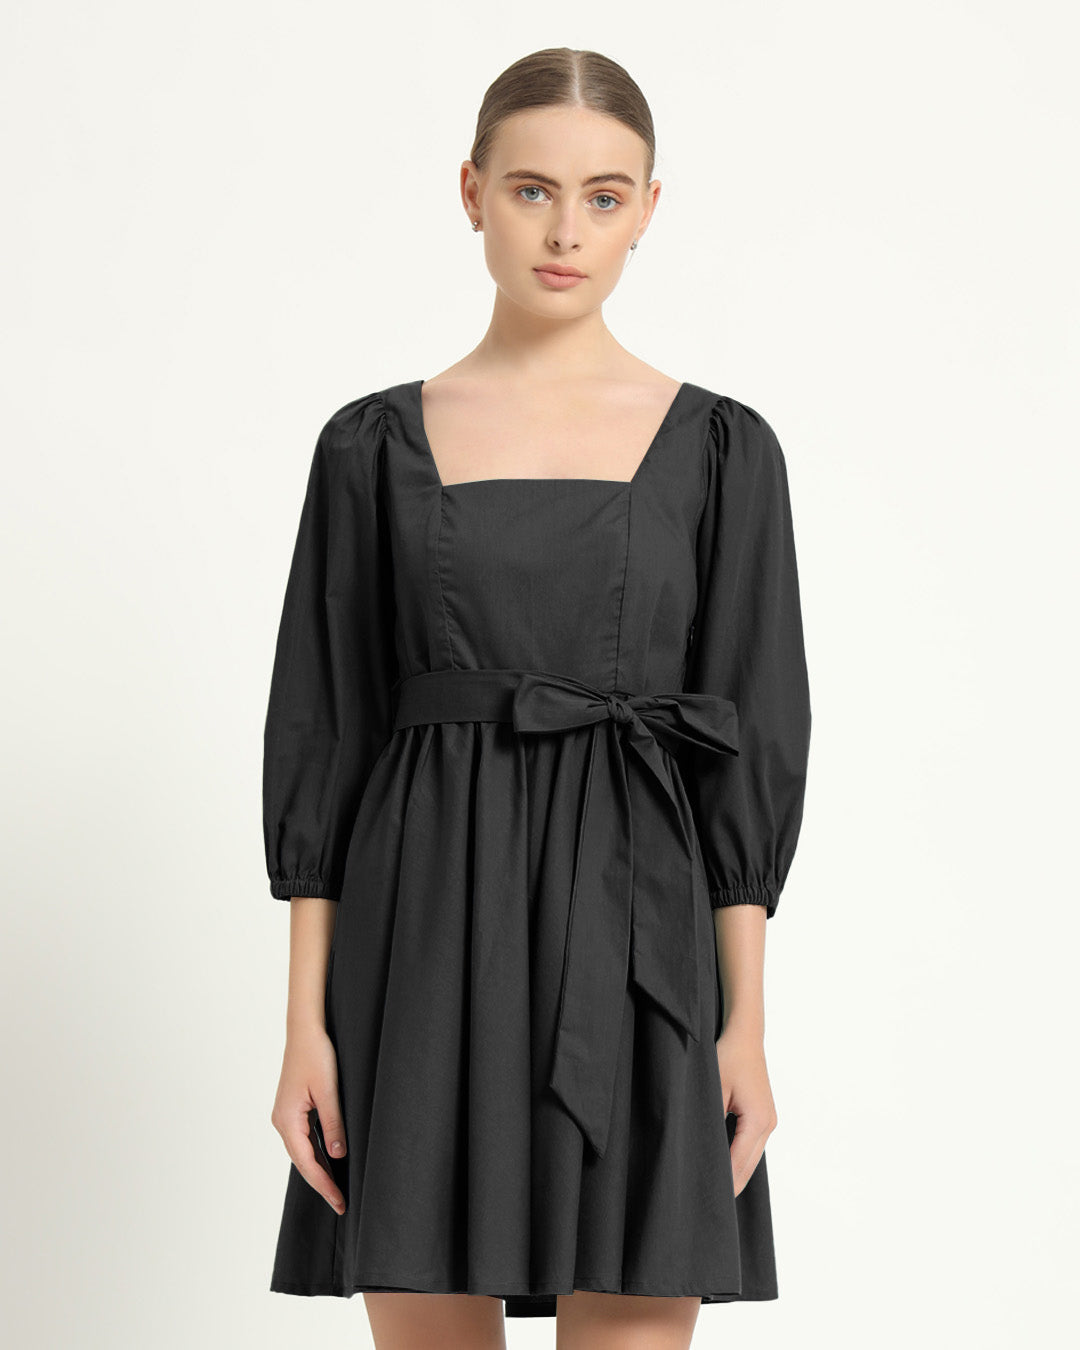 The Winklern Noir Cotton Dress